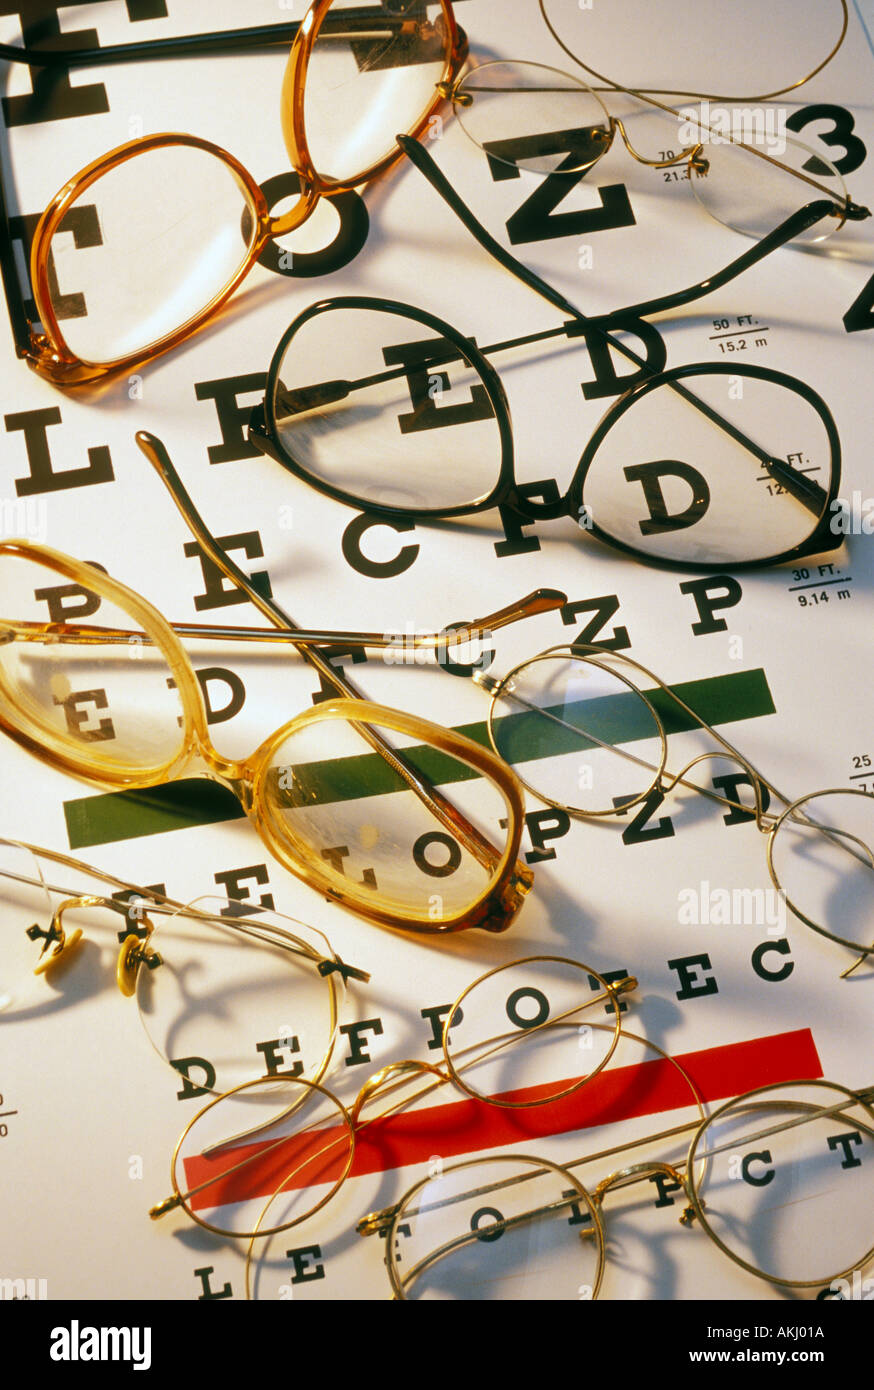 assorted eye glasses on eye chart Stock Photo